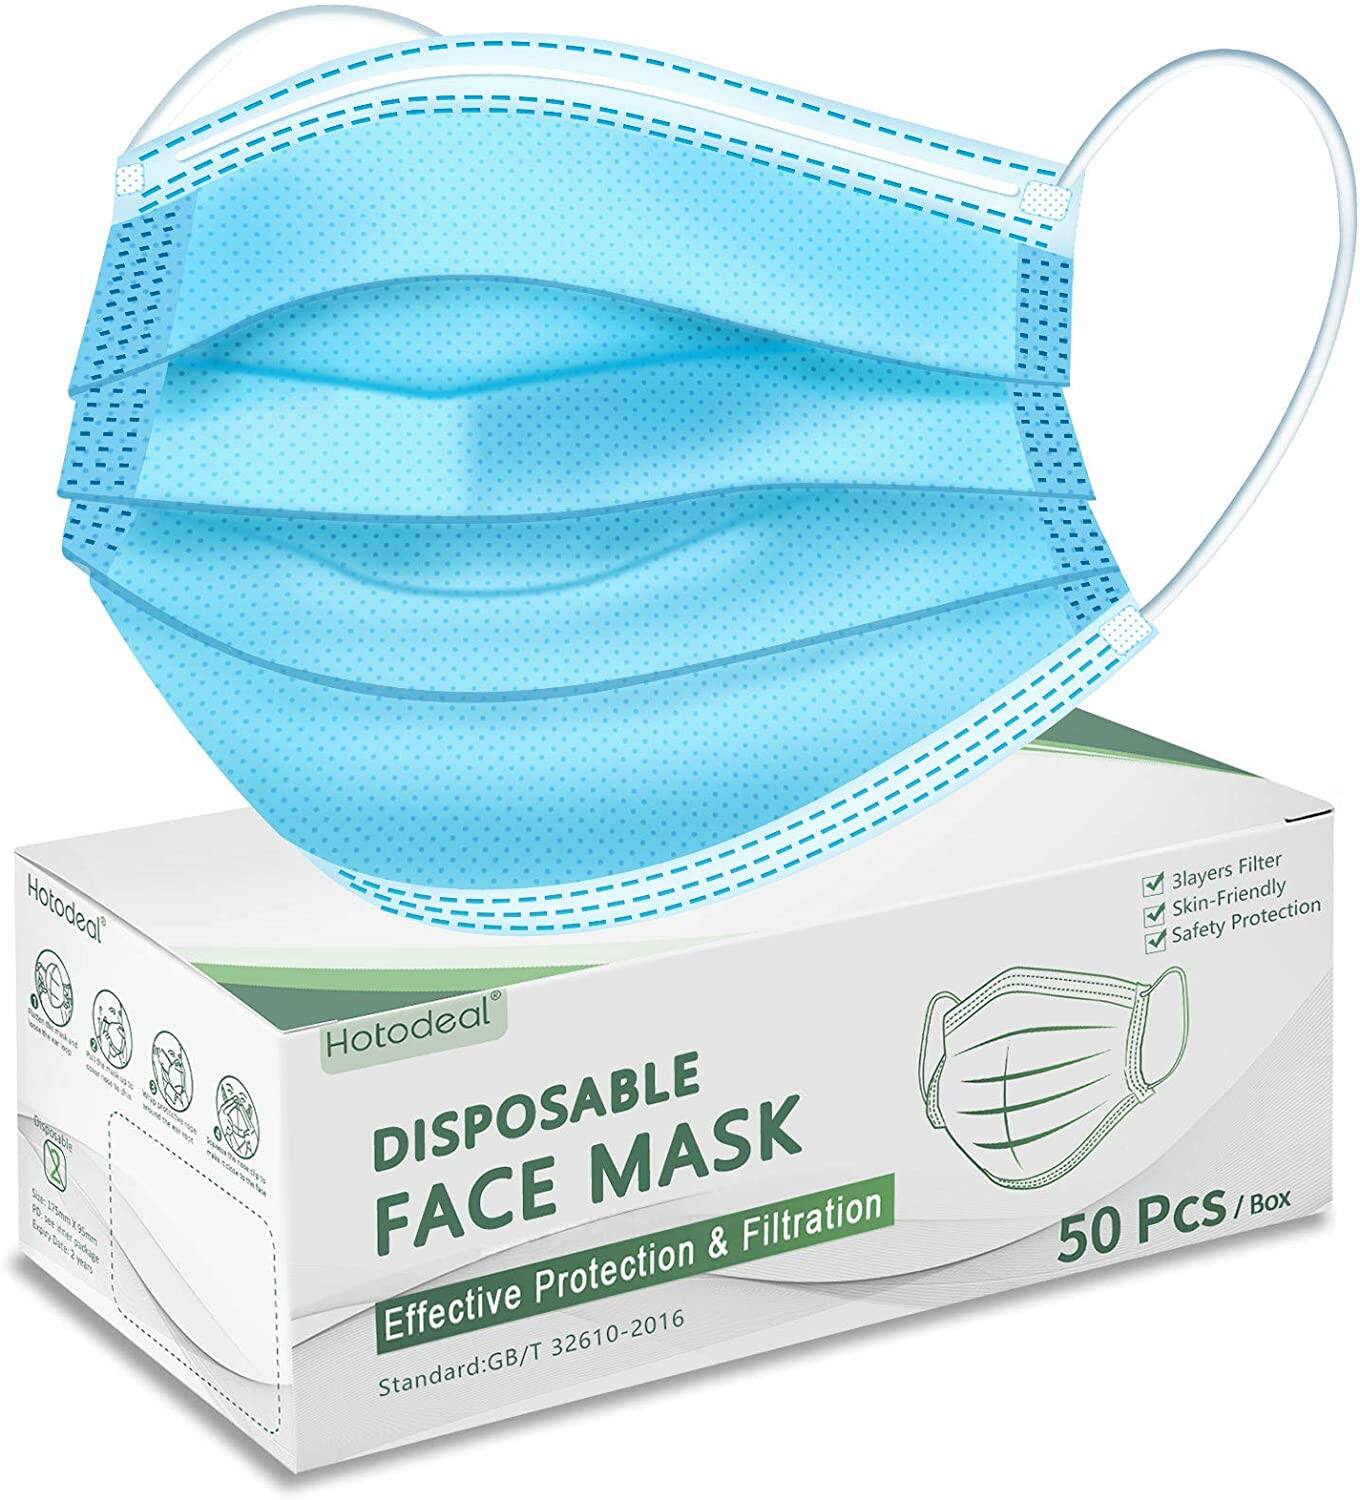 50pcs Disposable Face Masks $4.99 + FS